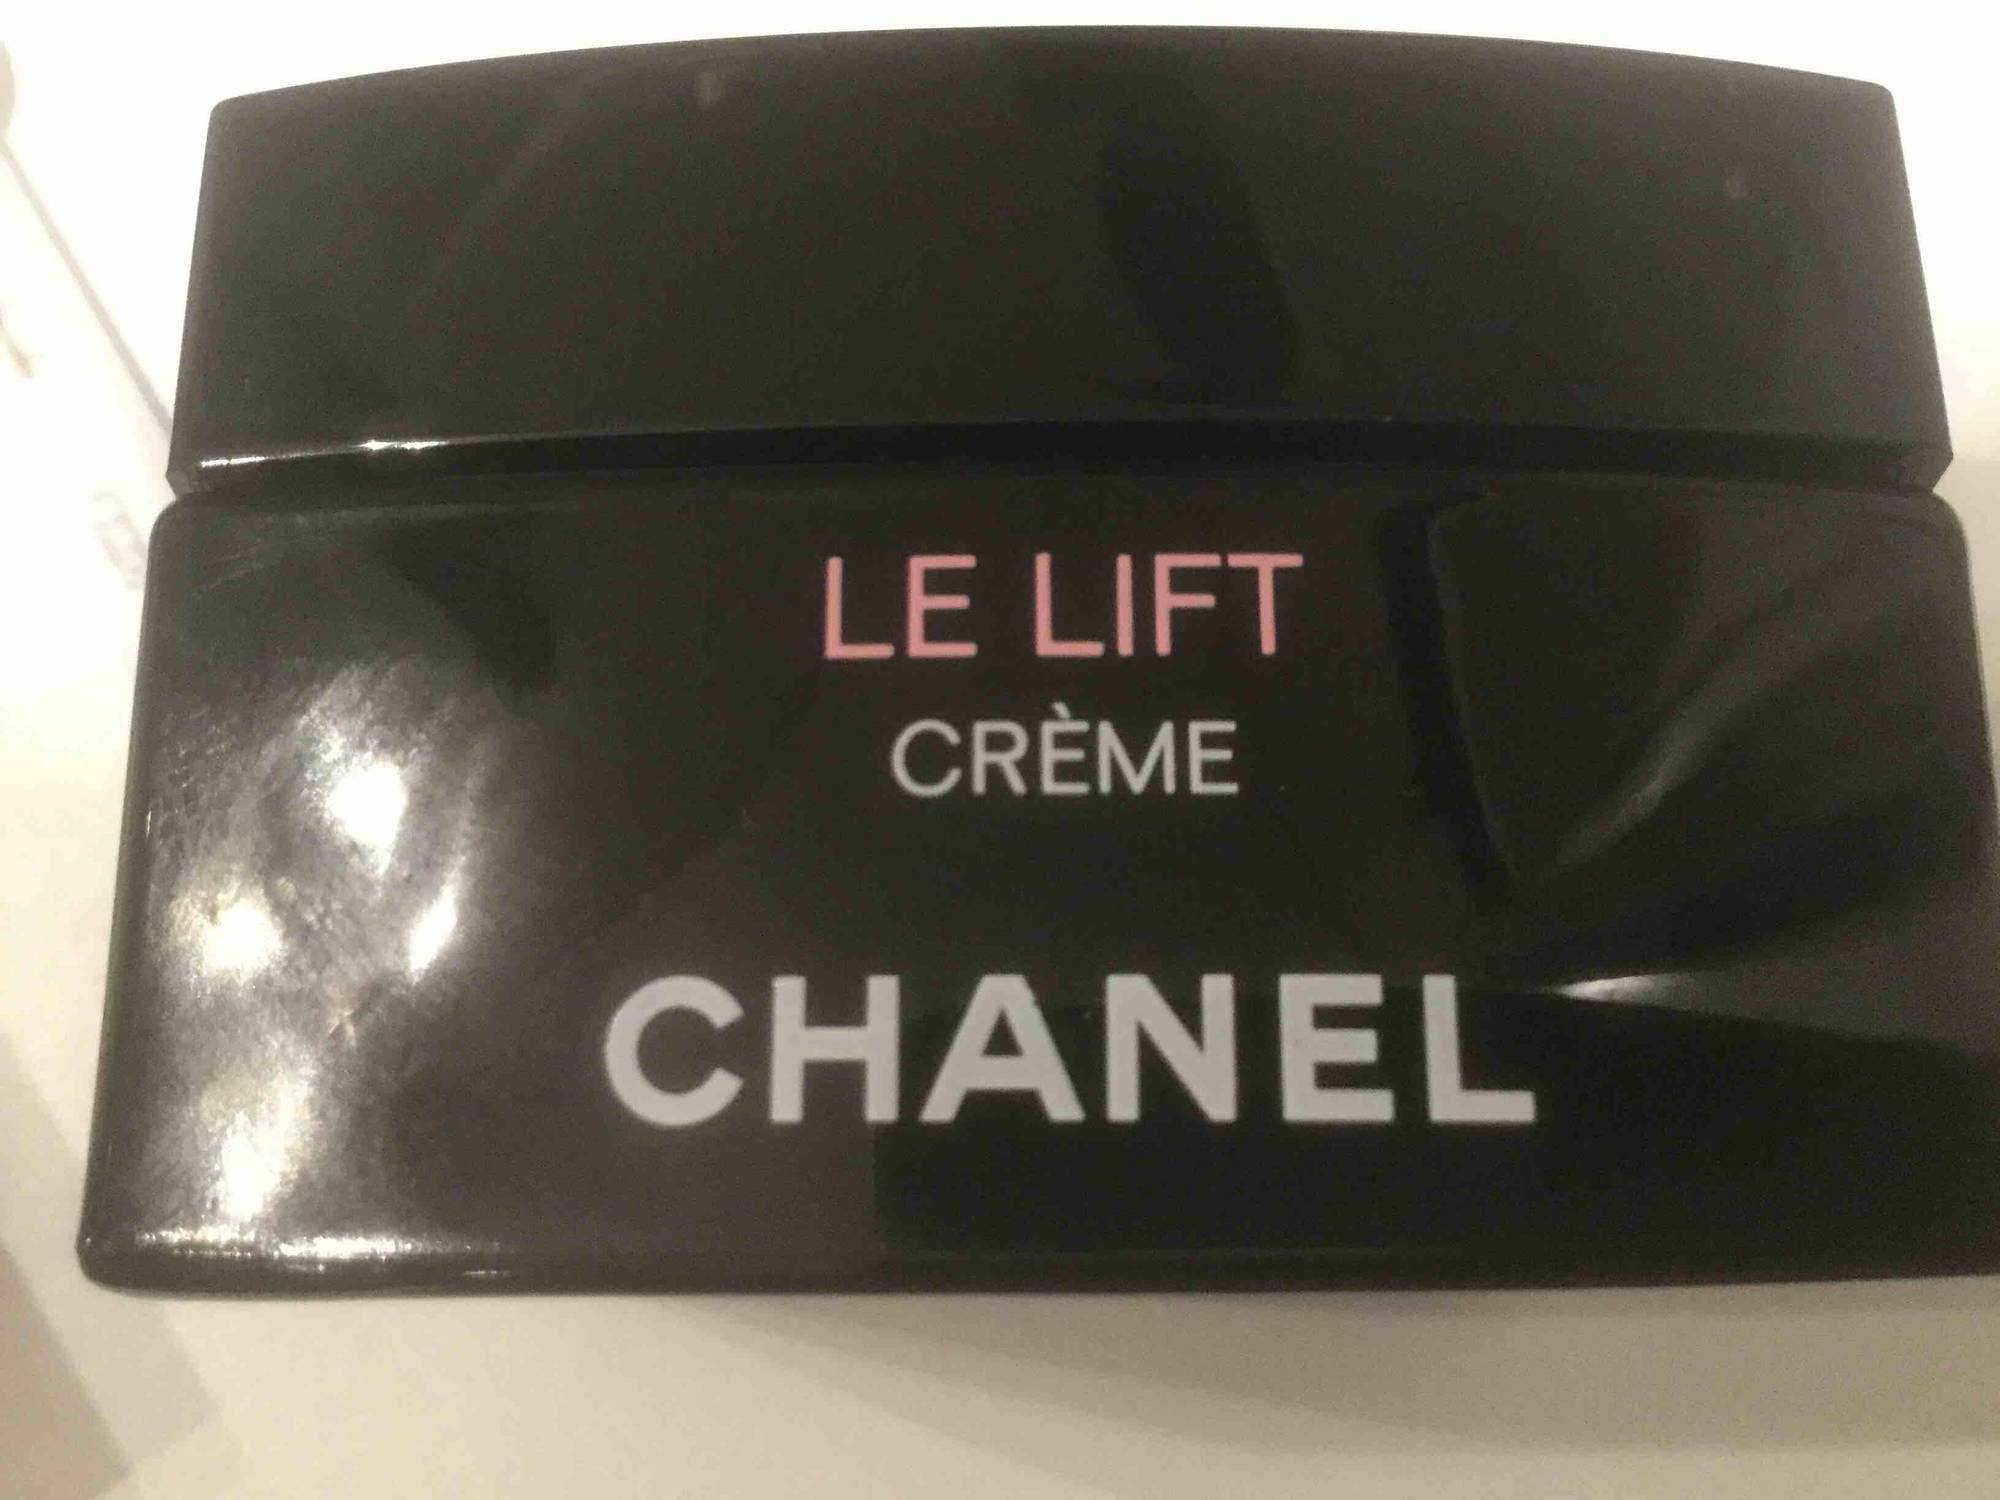 CHANEL - Le lift - Crème